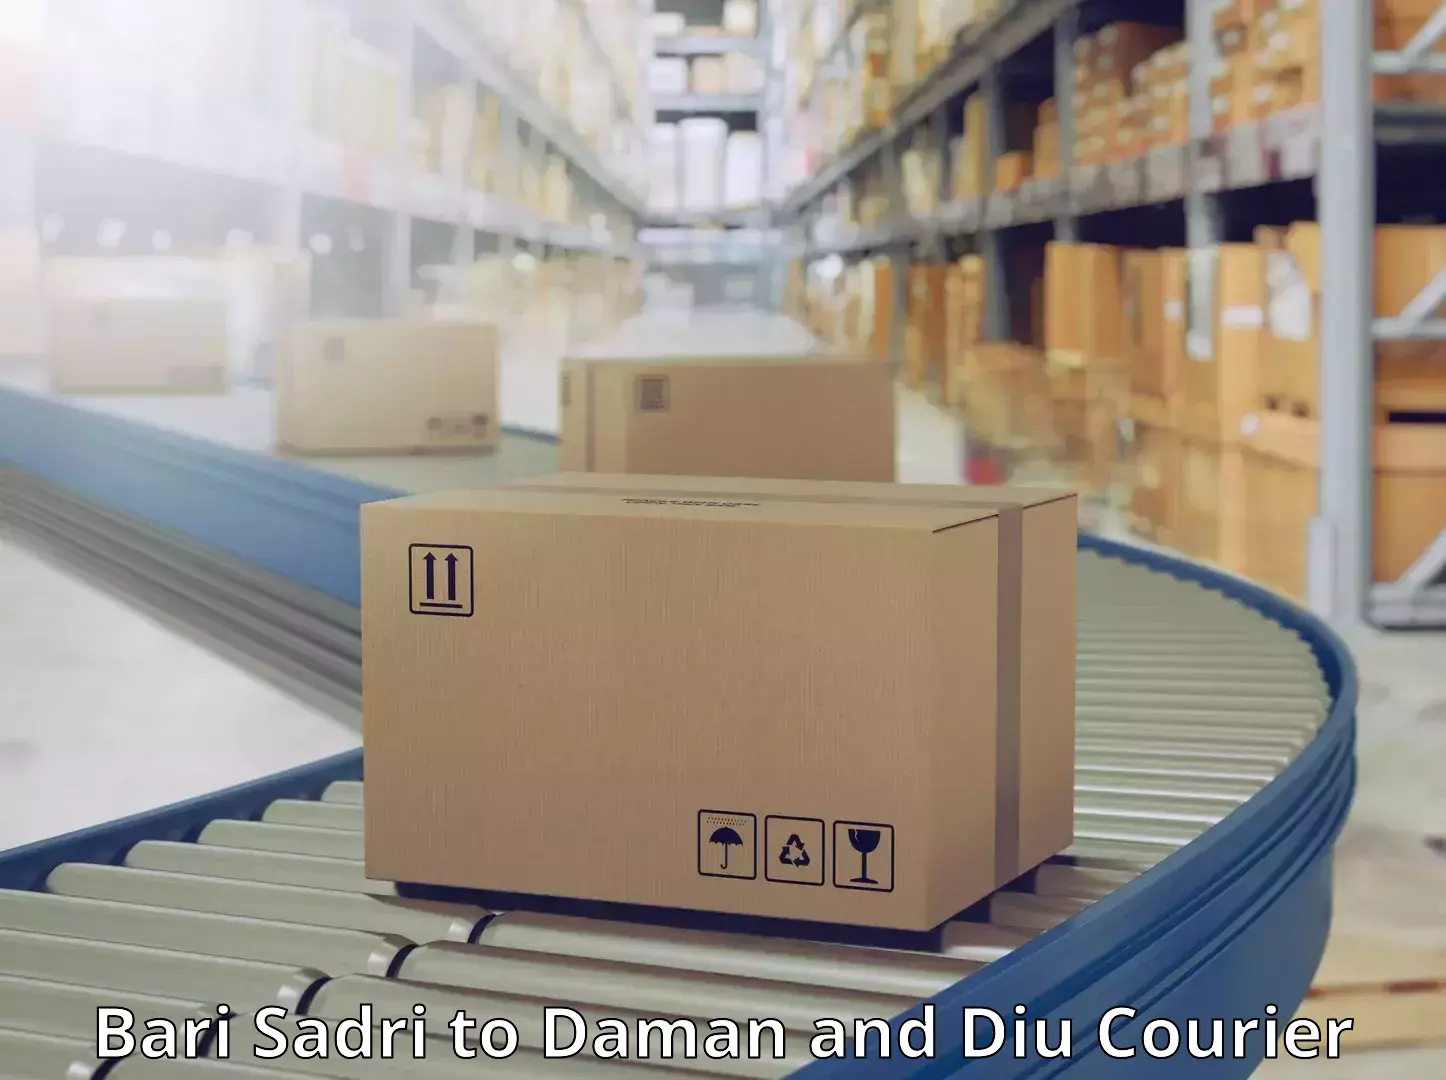 Efficient shipping operations Bari Sadri to Daman and Diu